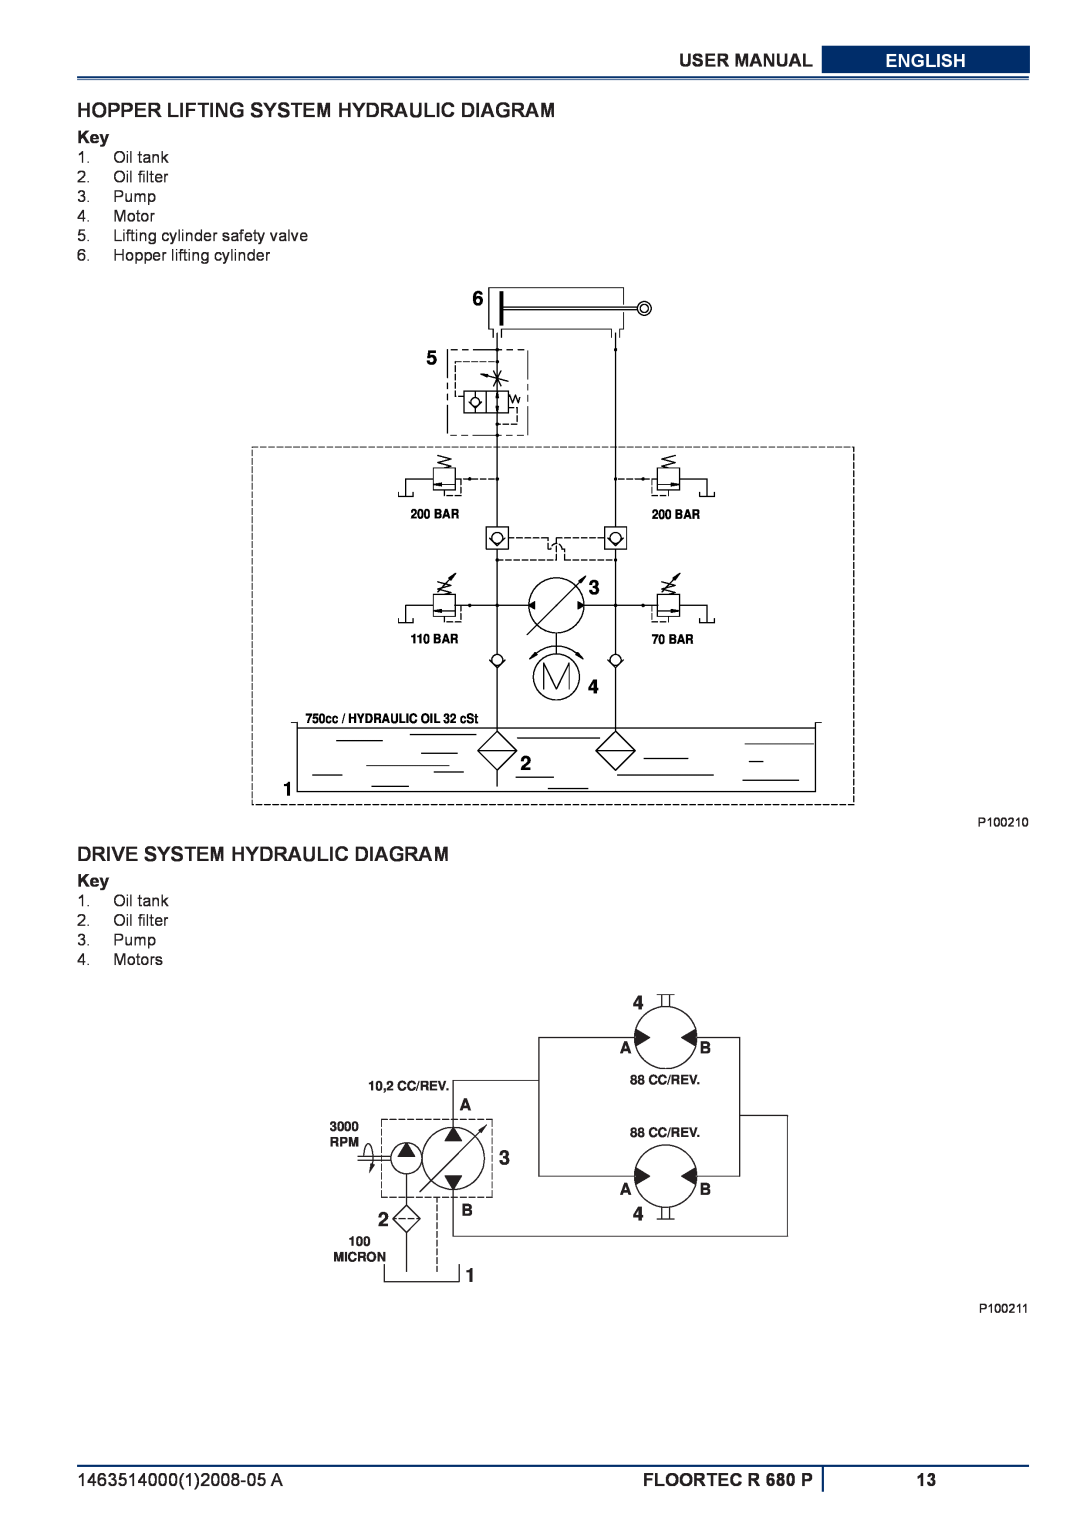 Nilfisk-ALTO R 680 P Hopper Lifting System Hydraulic Diagram, Drive System Hydraulic Diagram, User Manual, English, A B B4 